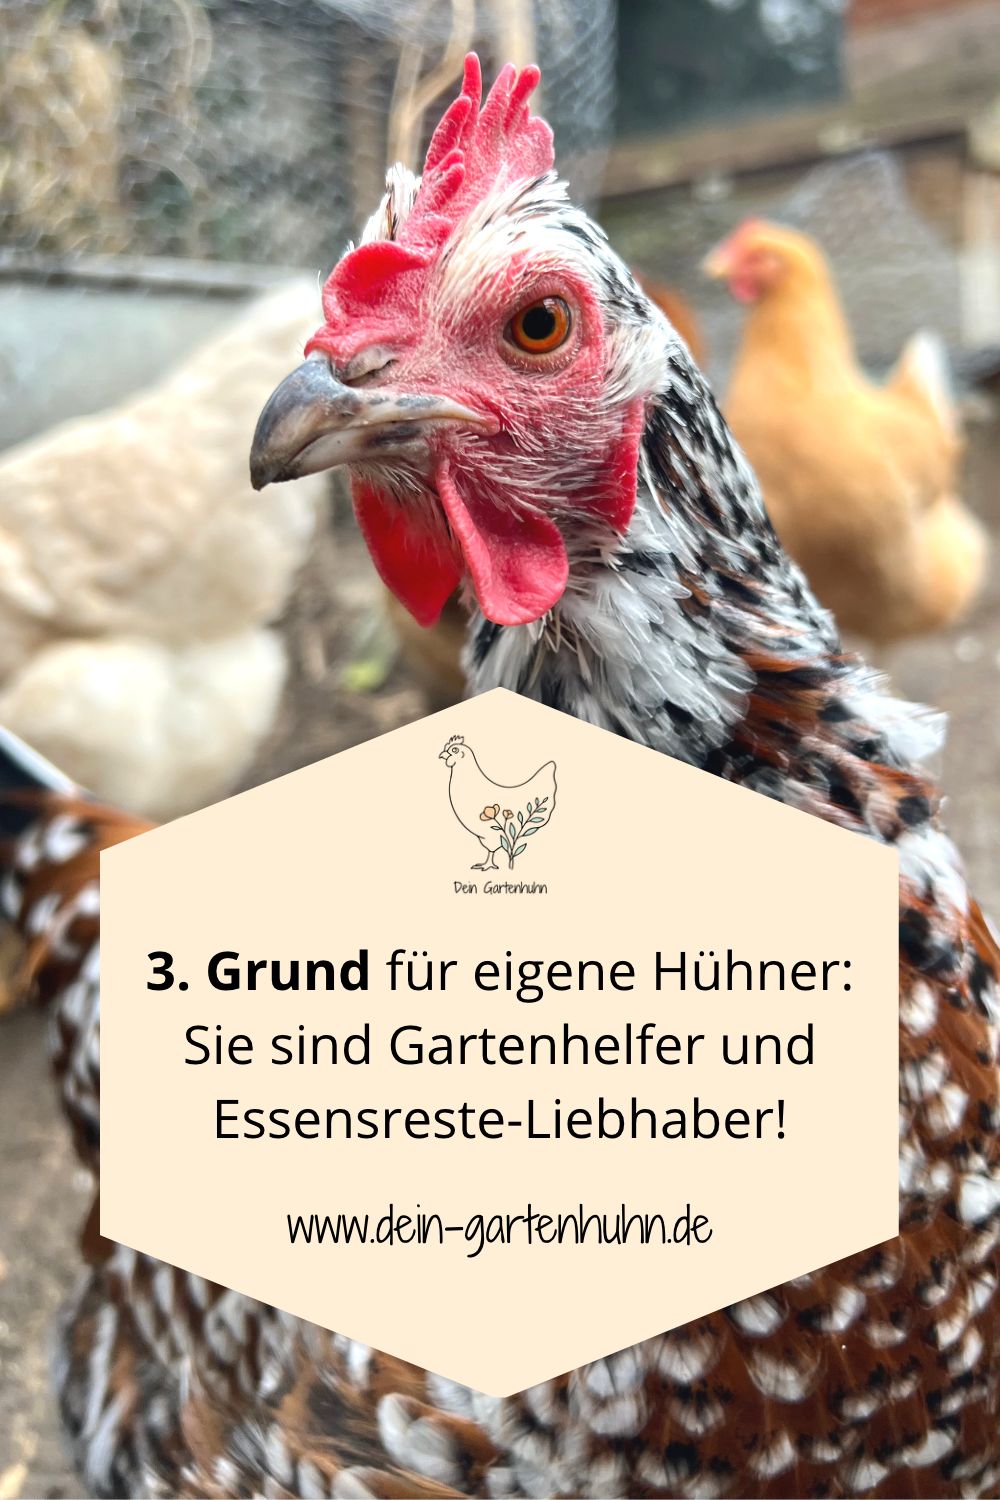 3. Grund für eigene Hühner: Sie sind Gartenhelfer und Essensreste-Liebhaber